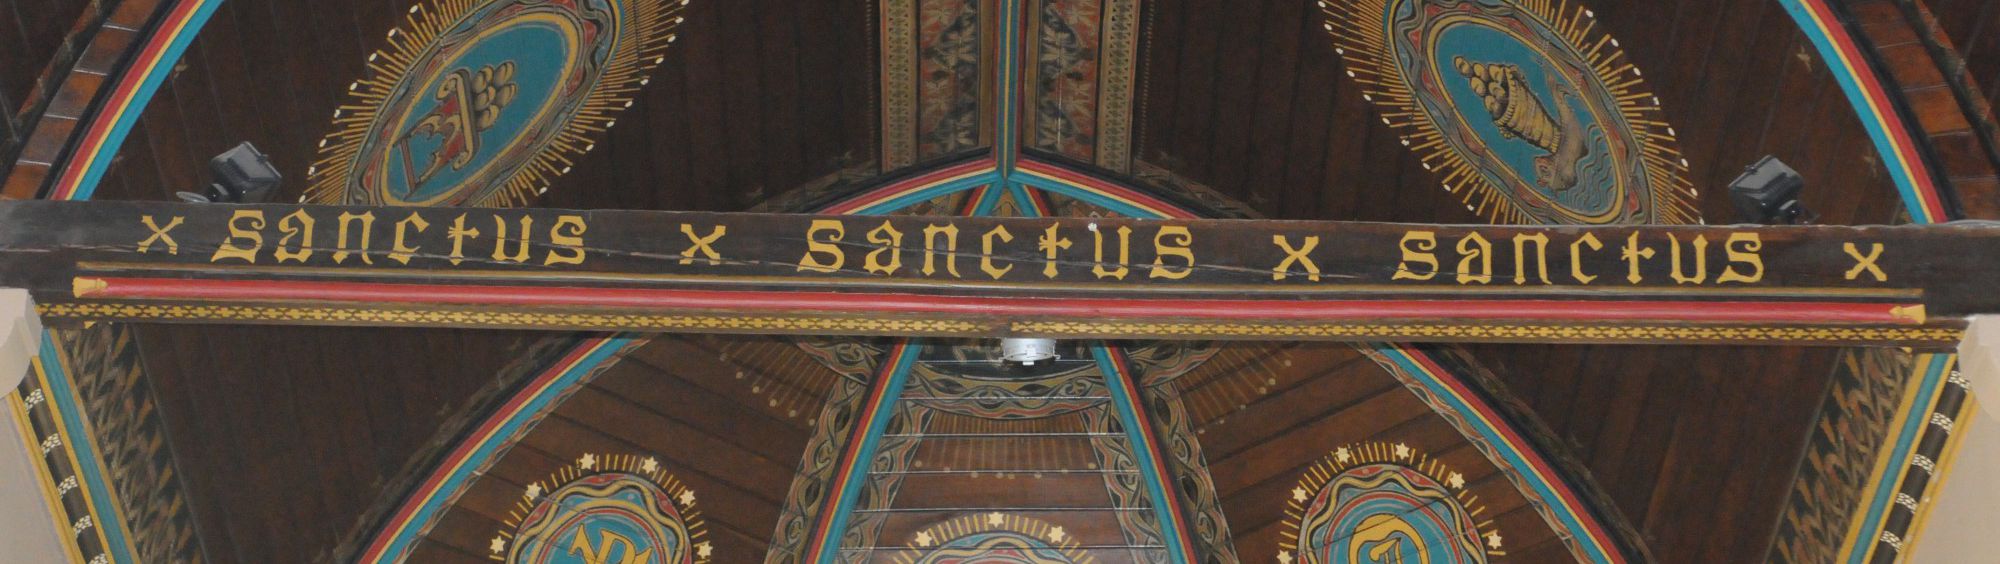 Sint-Eligius